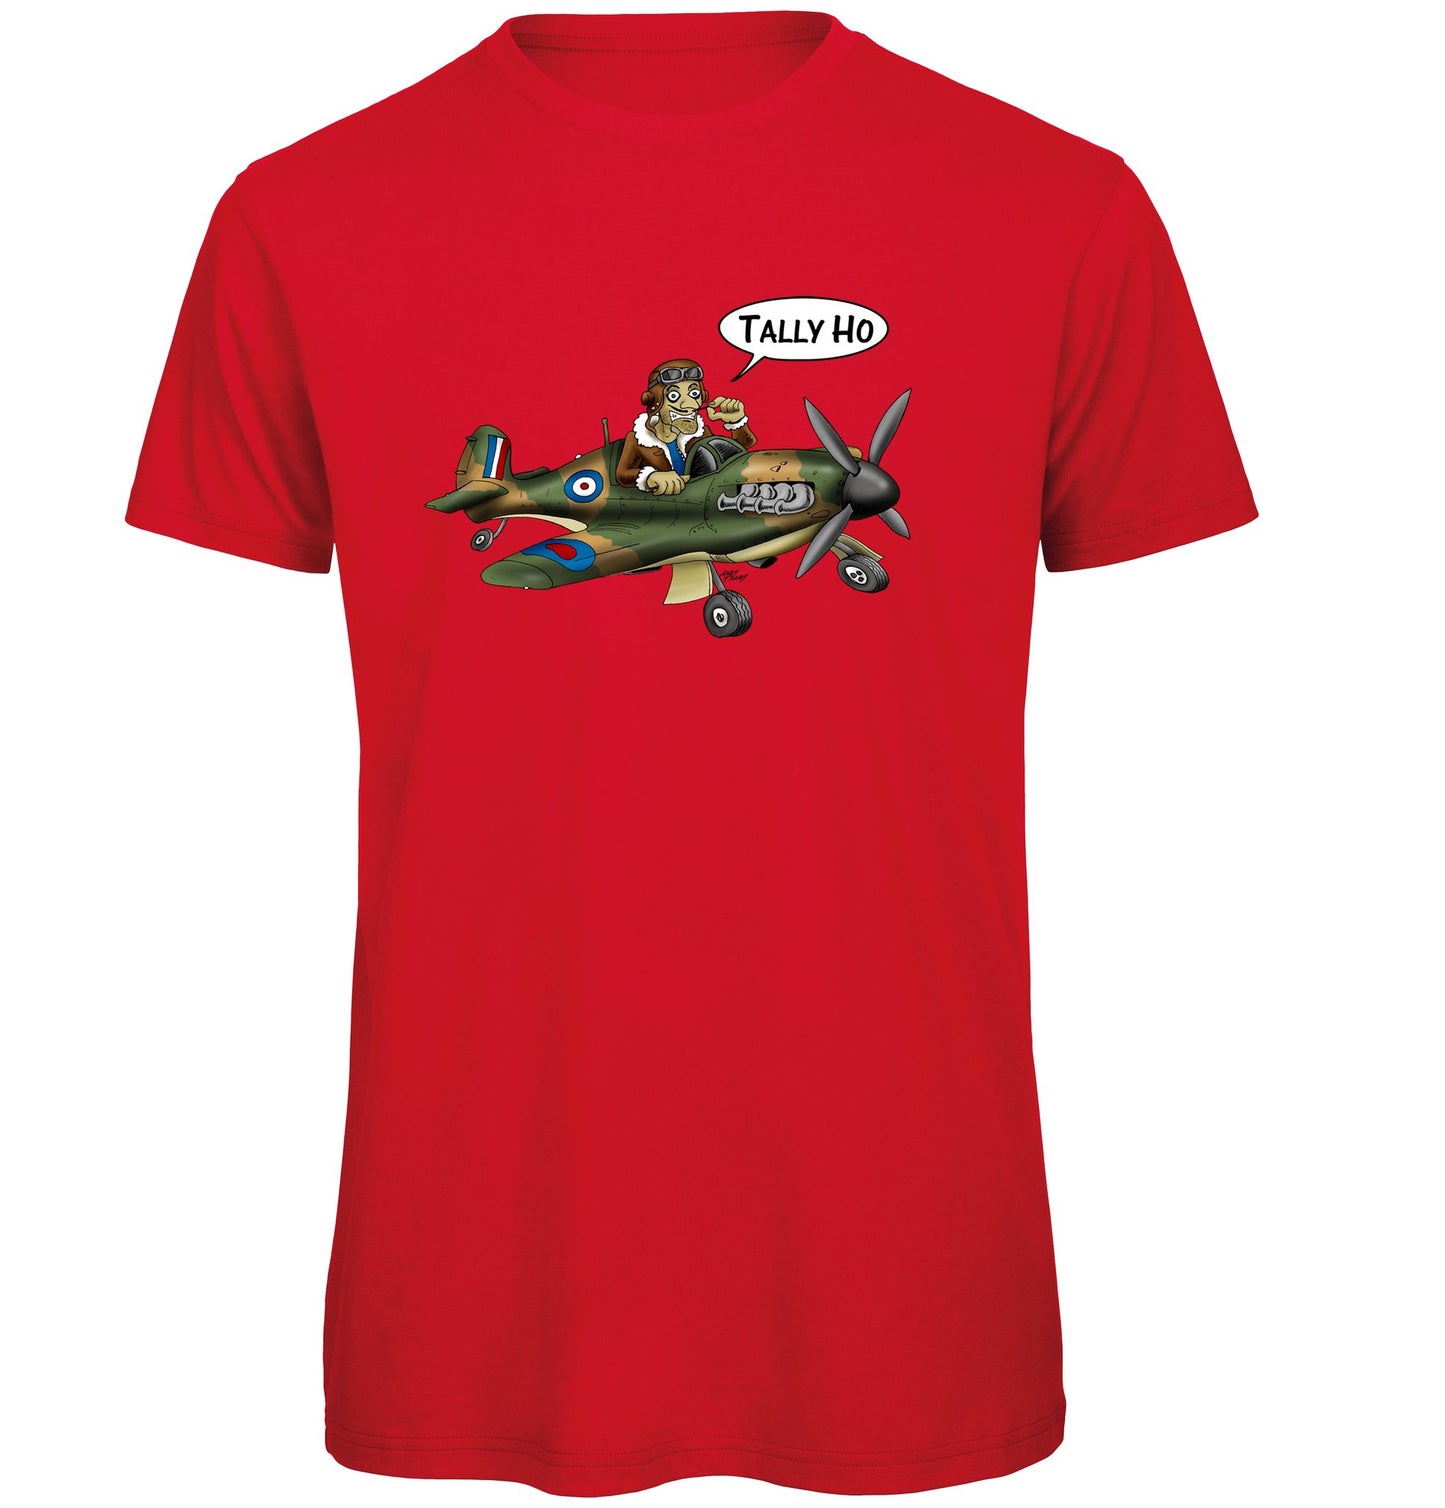 Tally Ho Spitfire T-Shirt